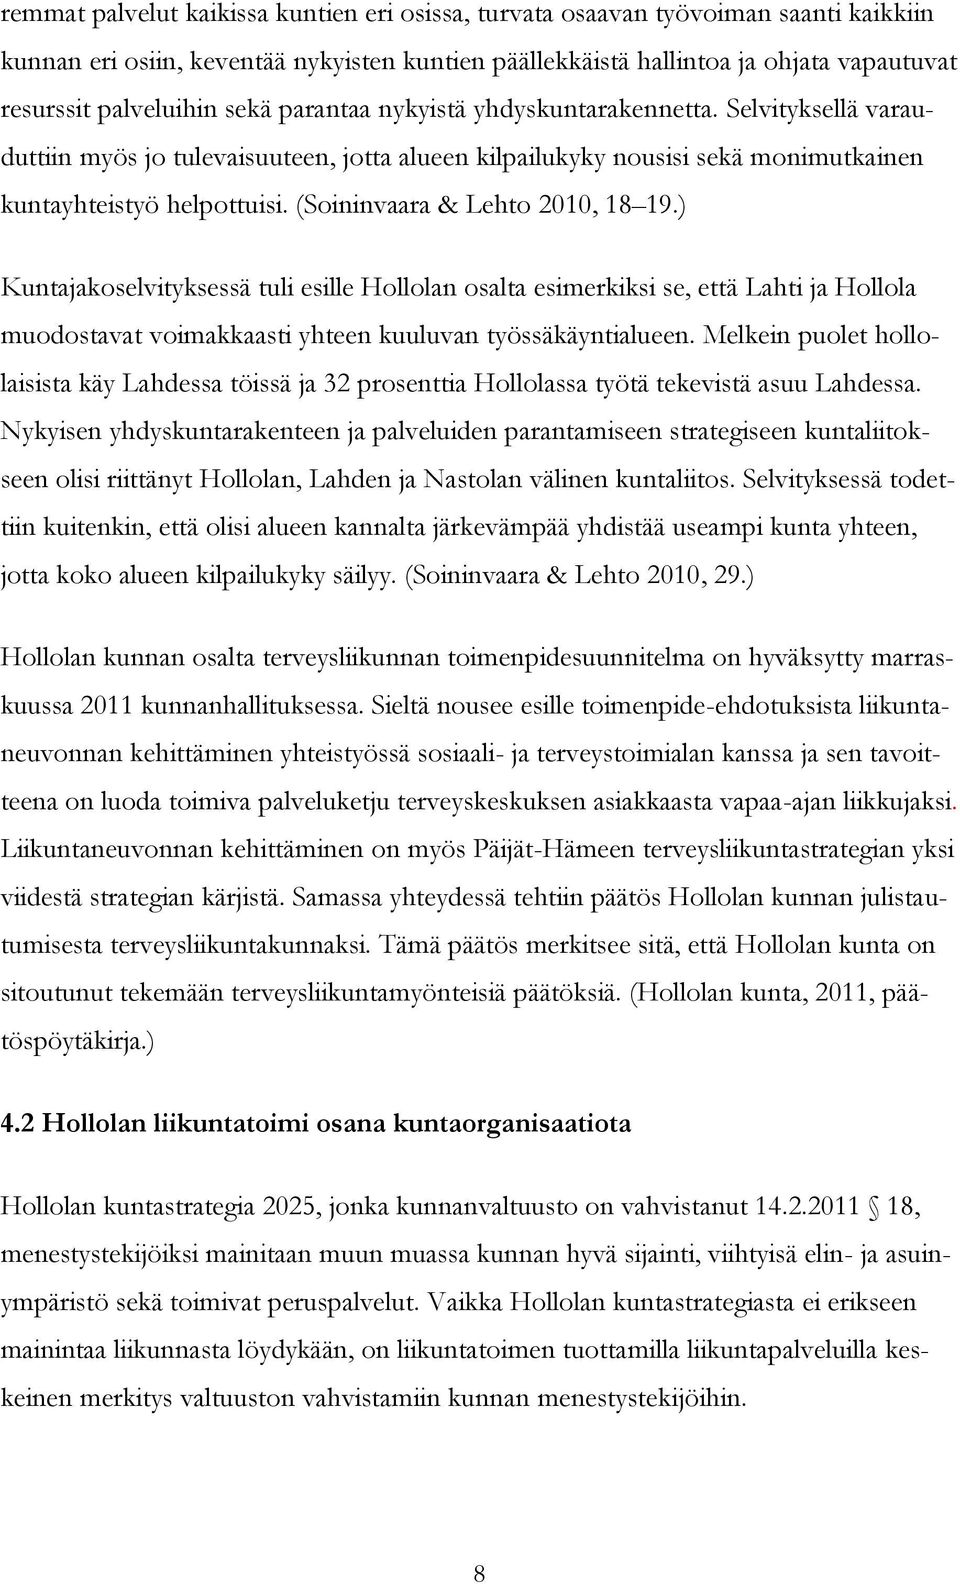 (Soininvaara & Lehto 2010, 18 19.) Kuntajakoselvityksessä tuli esille Hollolan osalta esimerkiksi se, että Lahti ja Hollola muodostavat voimakkaasti yhteen kuuluvan työssäkäyntialueen.